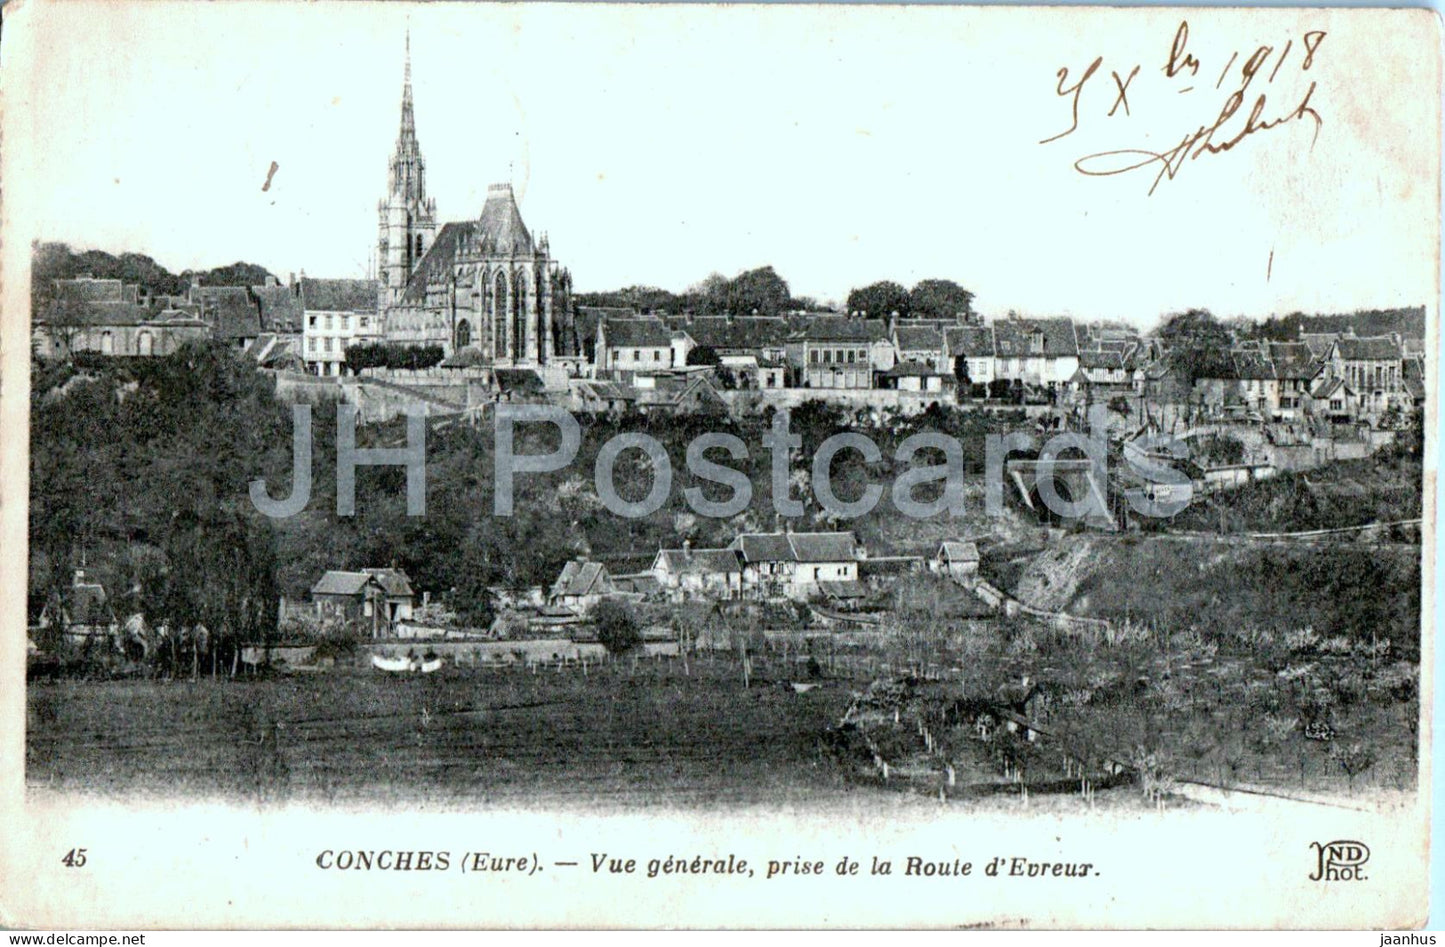 Conches - Vue Generale prise de la Route d'Evreux - 45 - old postcard - 1918 - France - used - JH Postcards